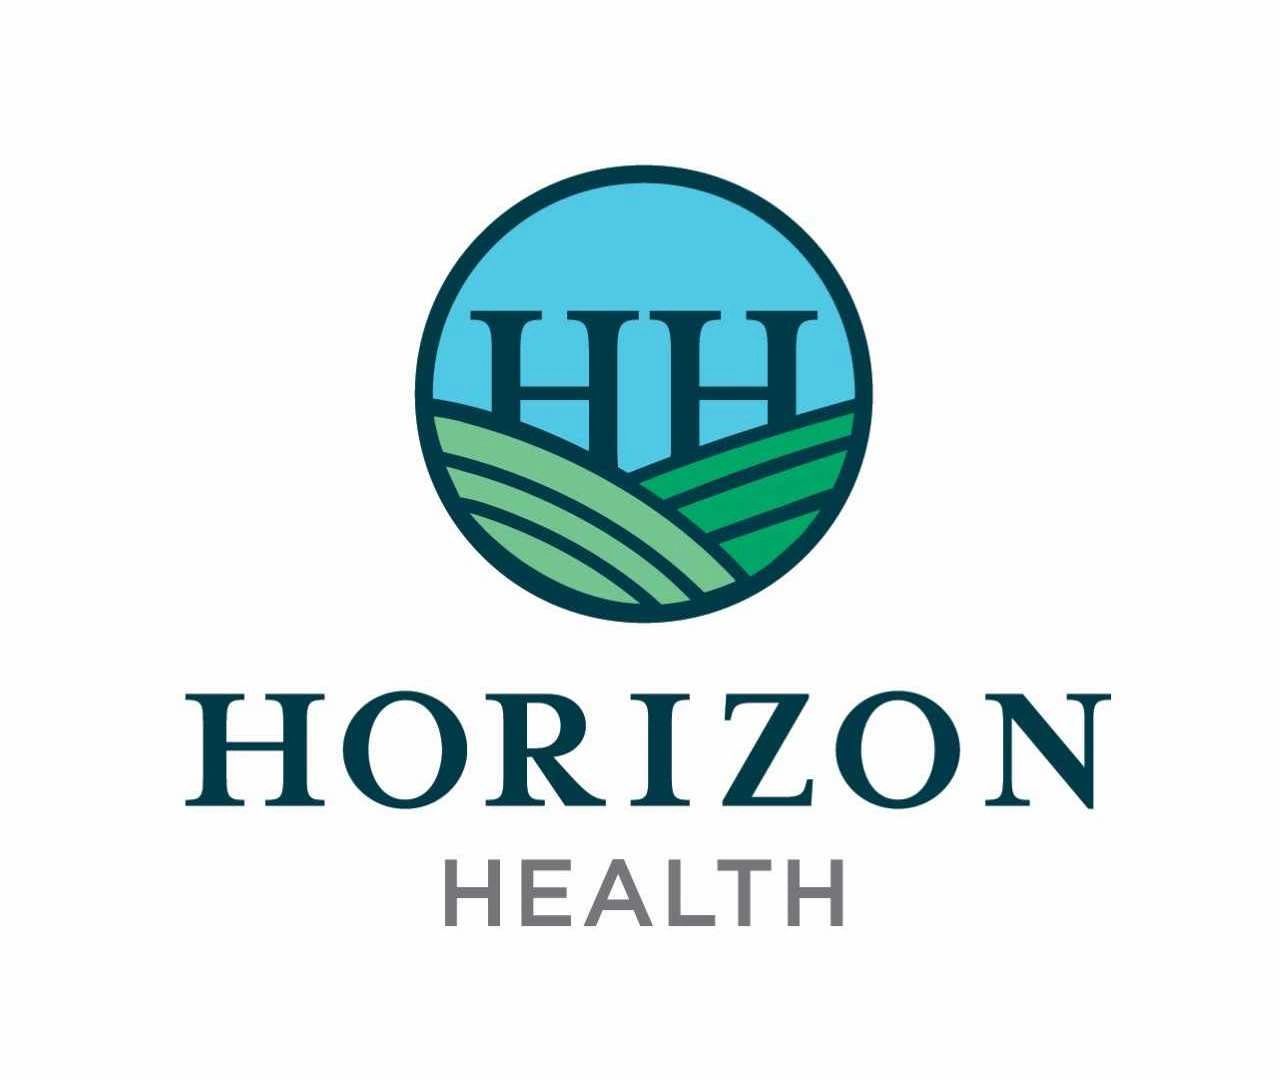 horizon therapeutics revenue 2020